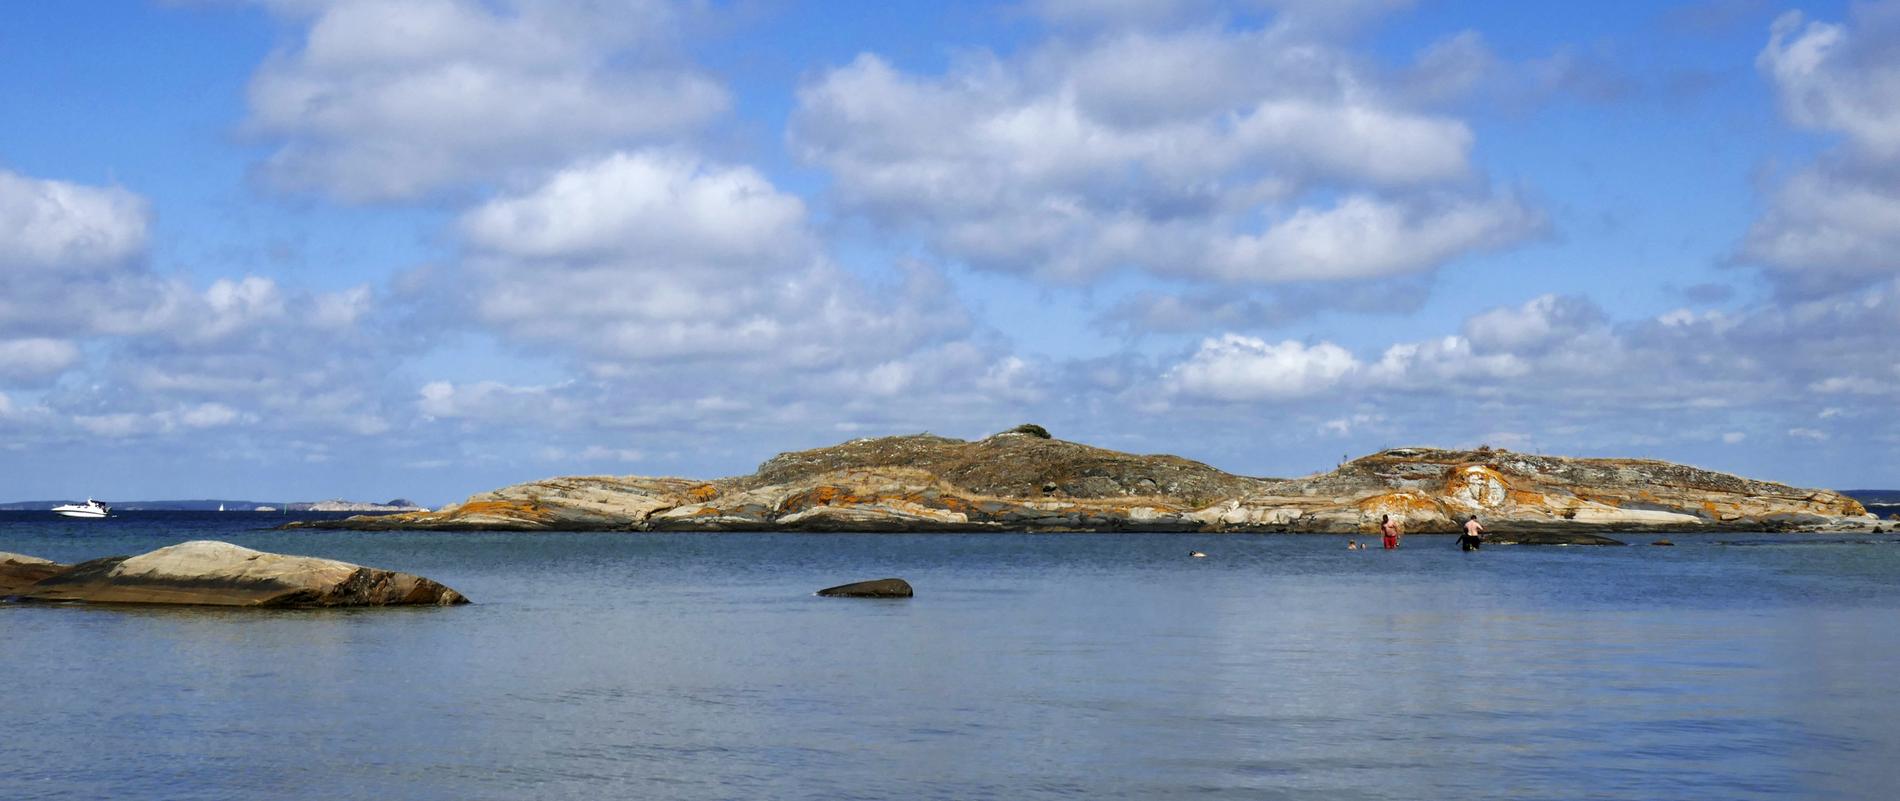 Skärgårdsdrömmar ger höga priset på västkusten, speciellt med sjönära läge. Arkivbild.